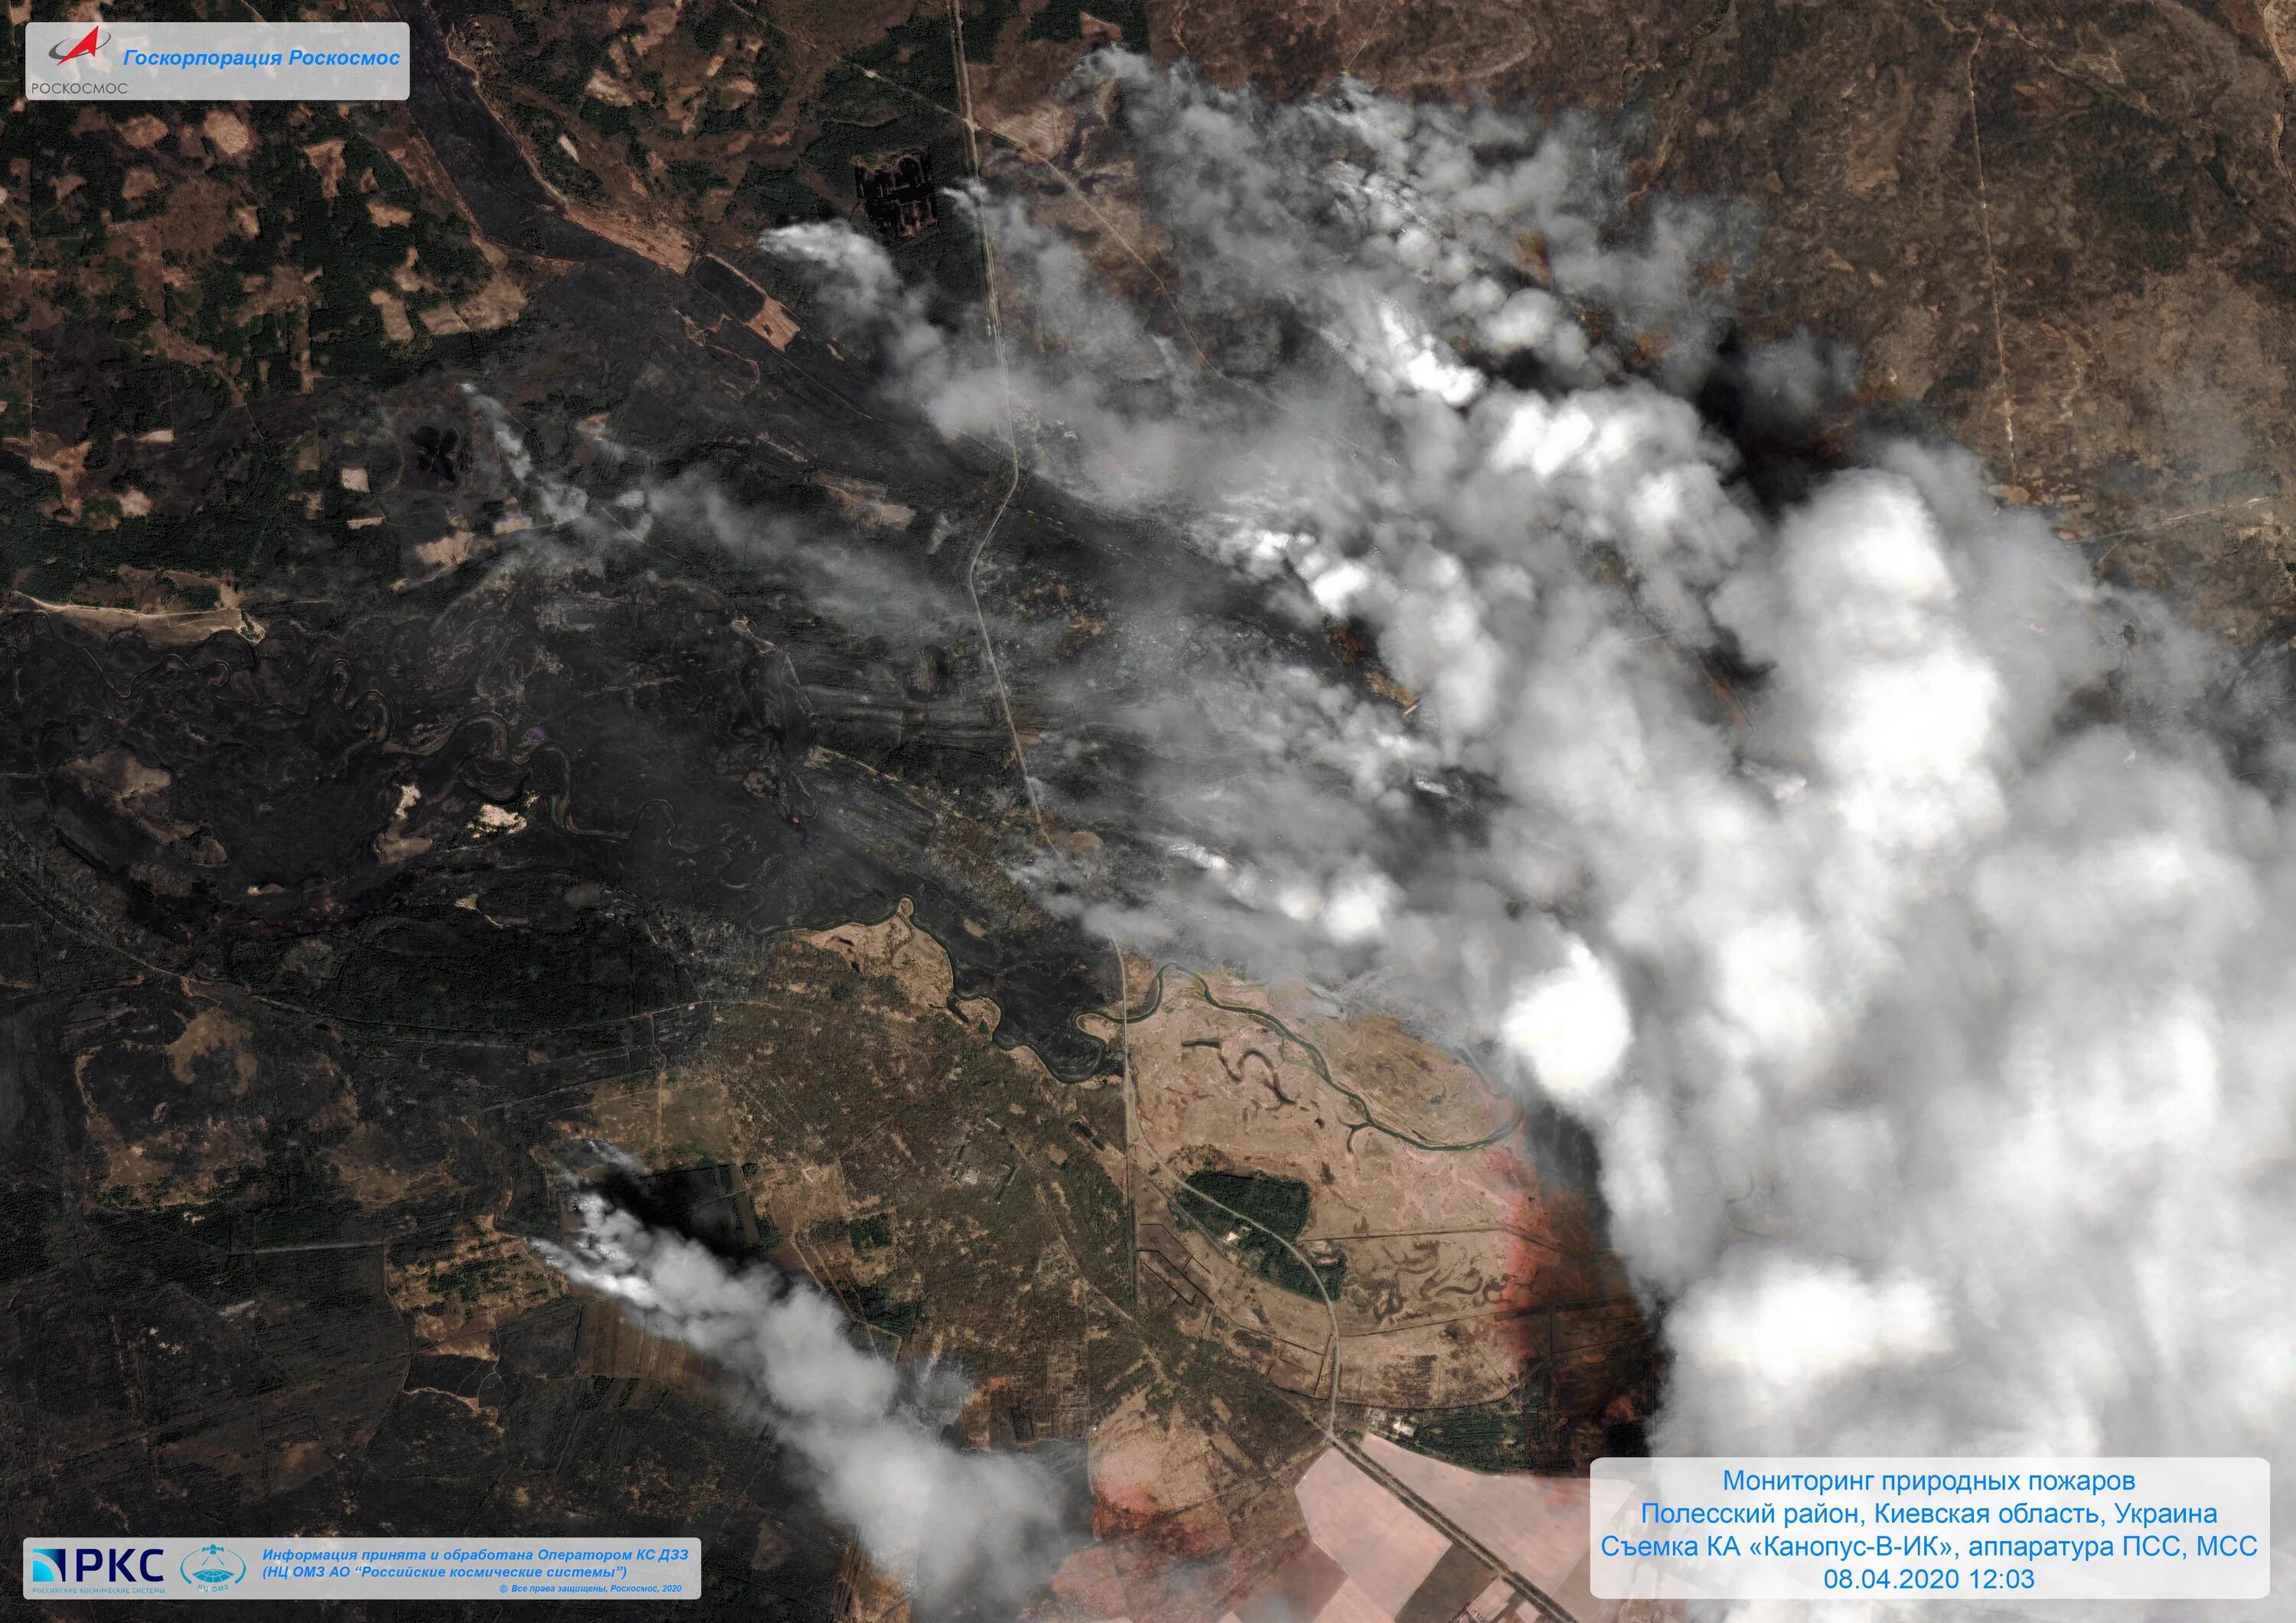 Снимки со спутников Канопус в. Спутниковый снимок лесного пожара. Пожар со спутника. Лесные пожары снимки со спутника.